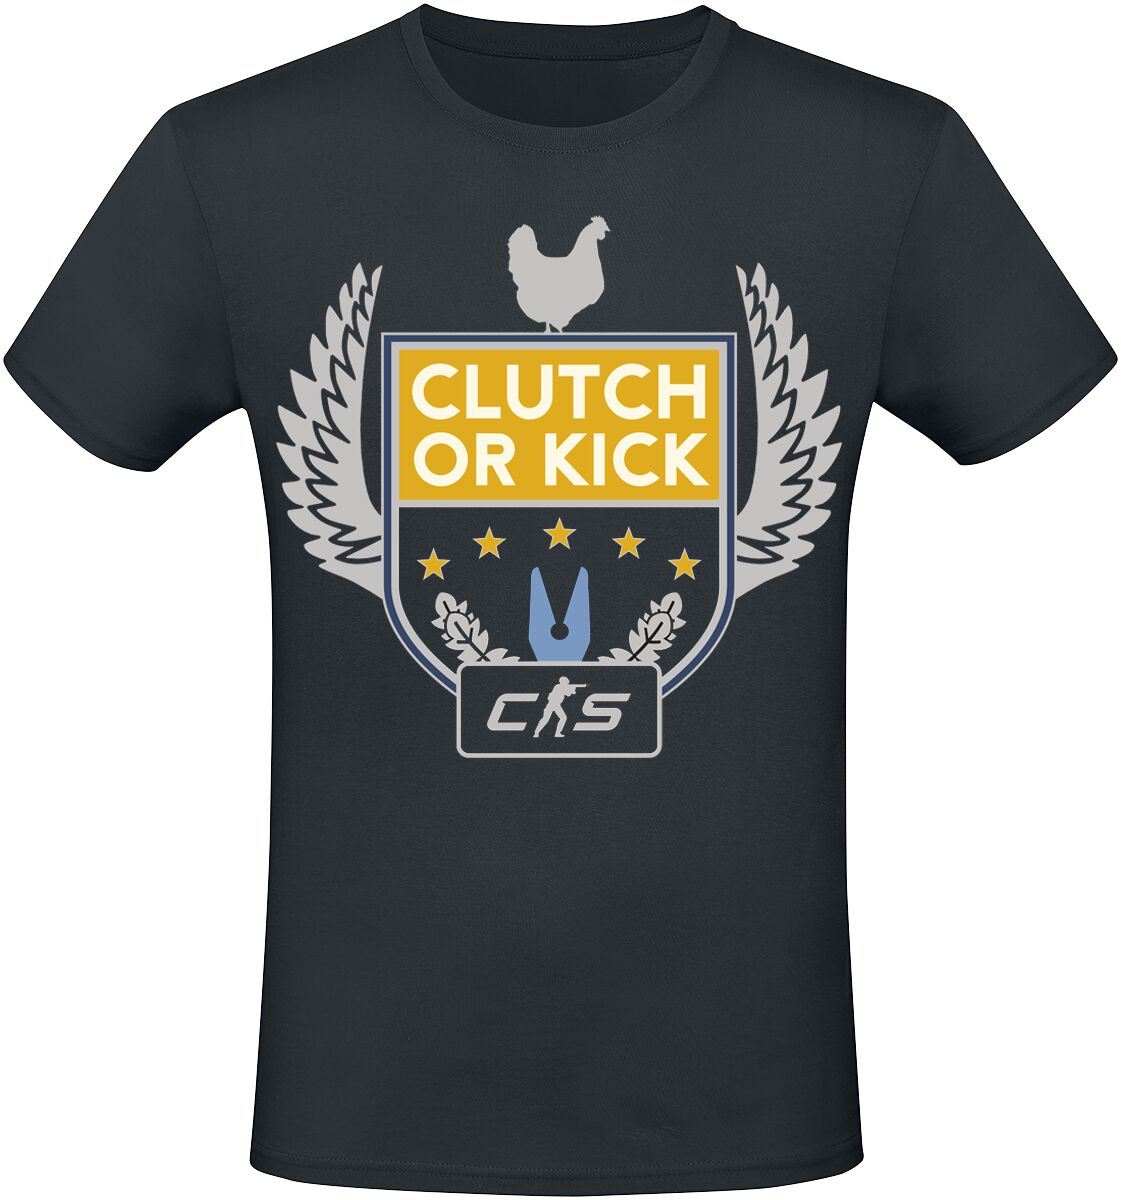 Counter-Strike - Gaming T-Shirt - 2 - Clutch Or Kick - S bis XXL - für Männer - Größe S - schwarz  - EMP exklusives Merchandise!